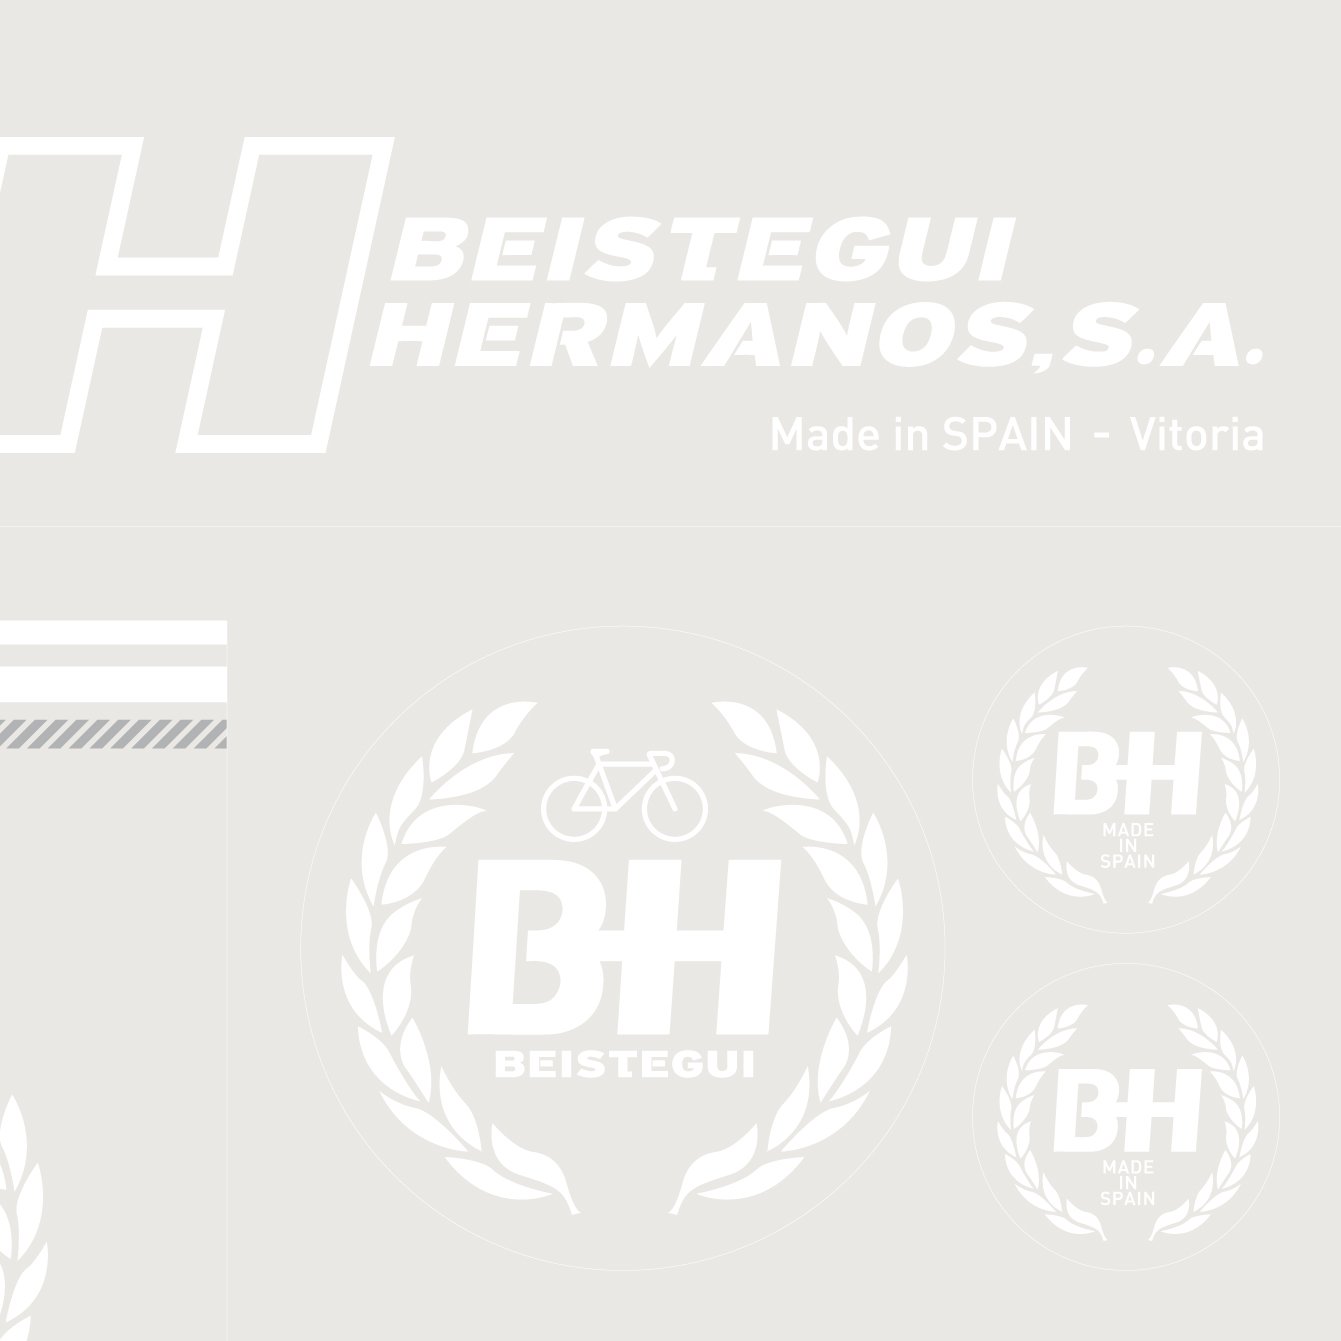 Image of BH. Fabricada en España - Vitoria. 1975